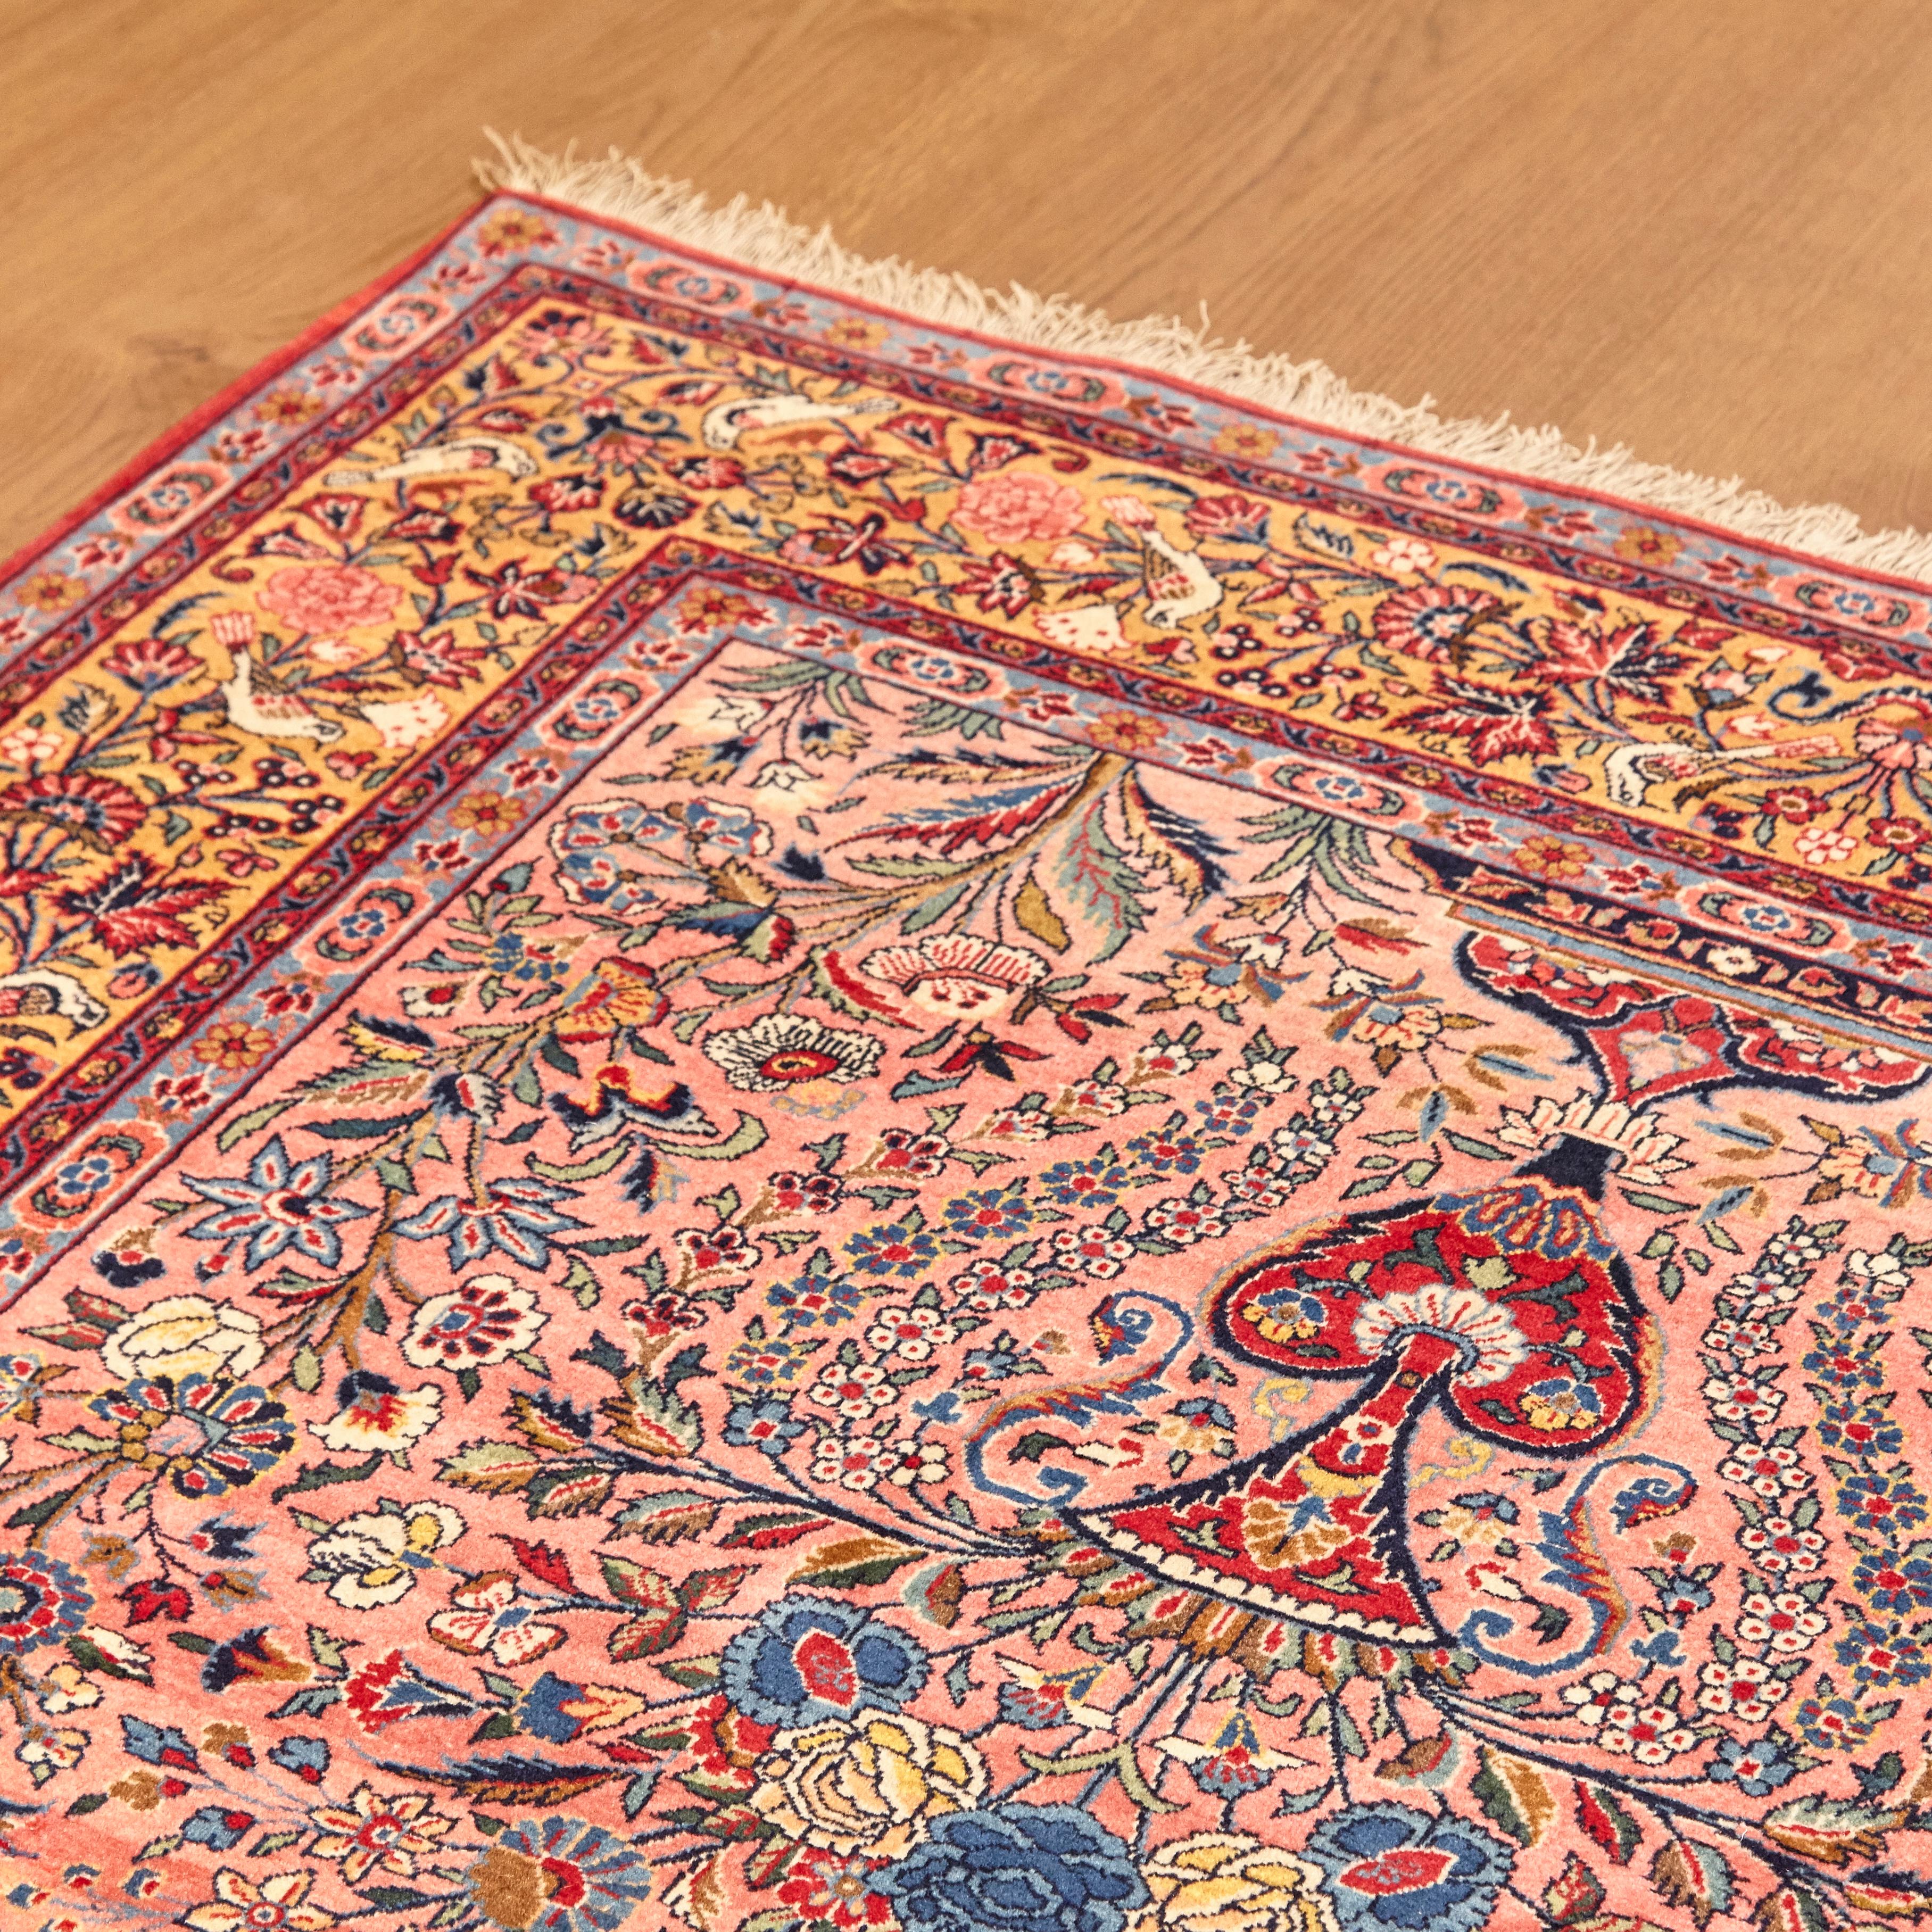 Wool color rug 
Measures: 134 x 208 cm 
Iran, circa 1940.